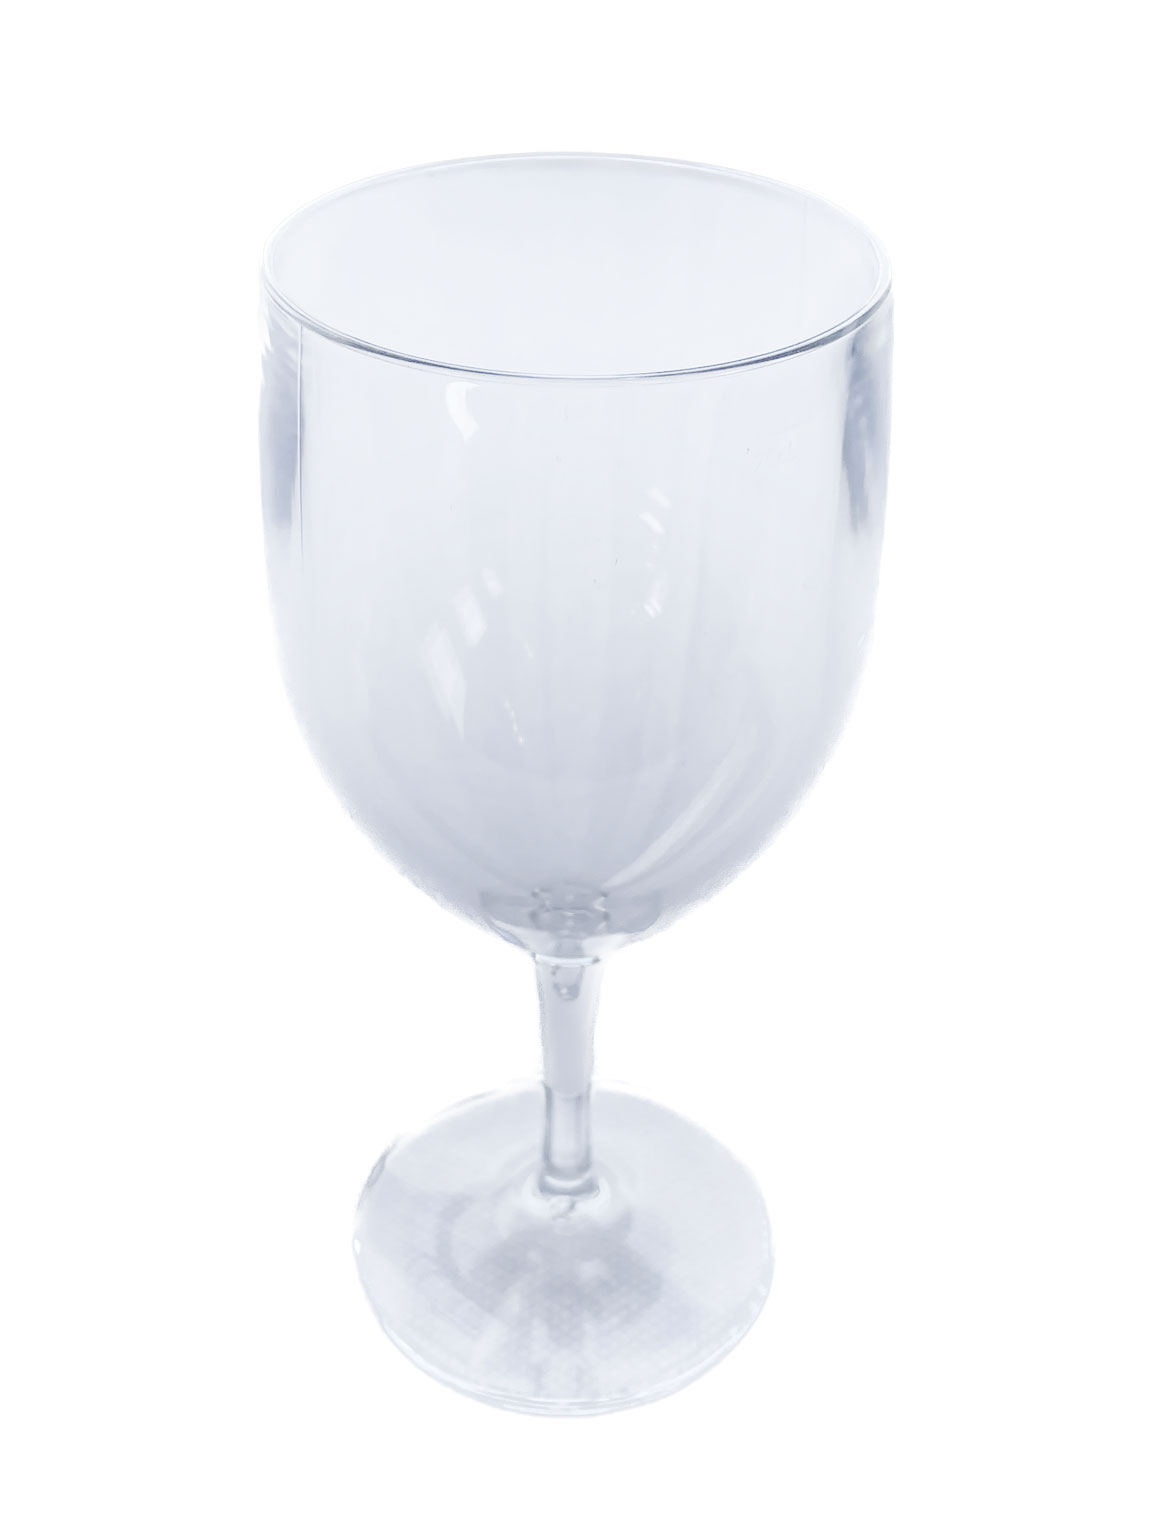 kunststof-wijnglas-groot-1152×1536